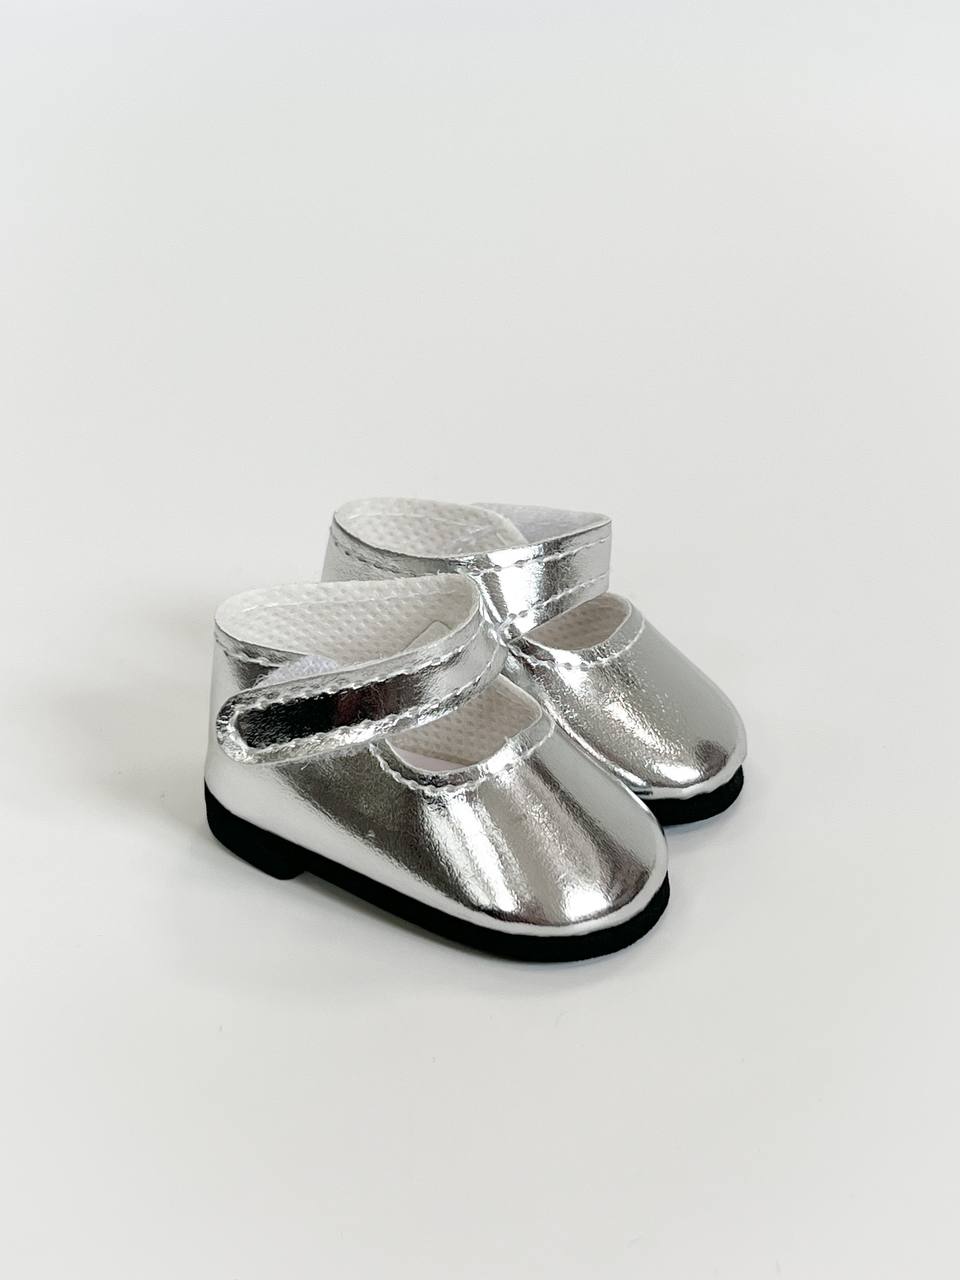 Paola Reina Туфли серебряные с застежкой, для кукол 36 см, арт. 63603